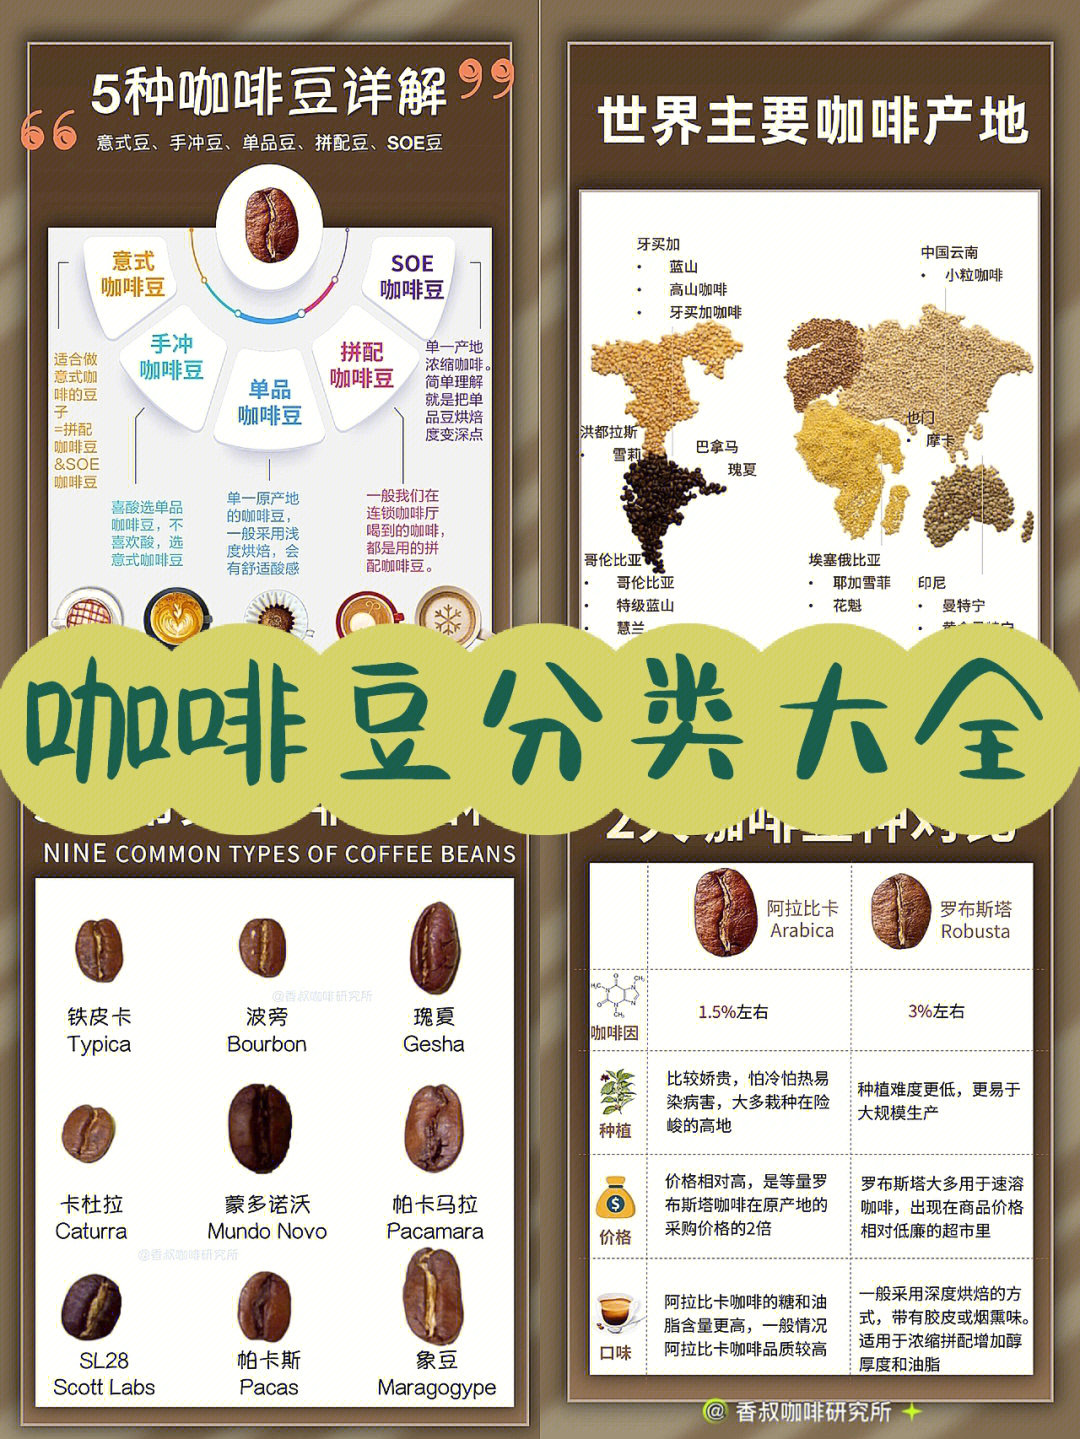 咖啡豆究竟有多少种714张图看懂咖啡种类